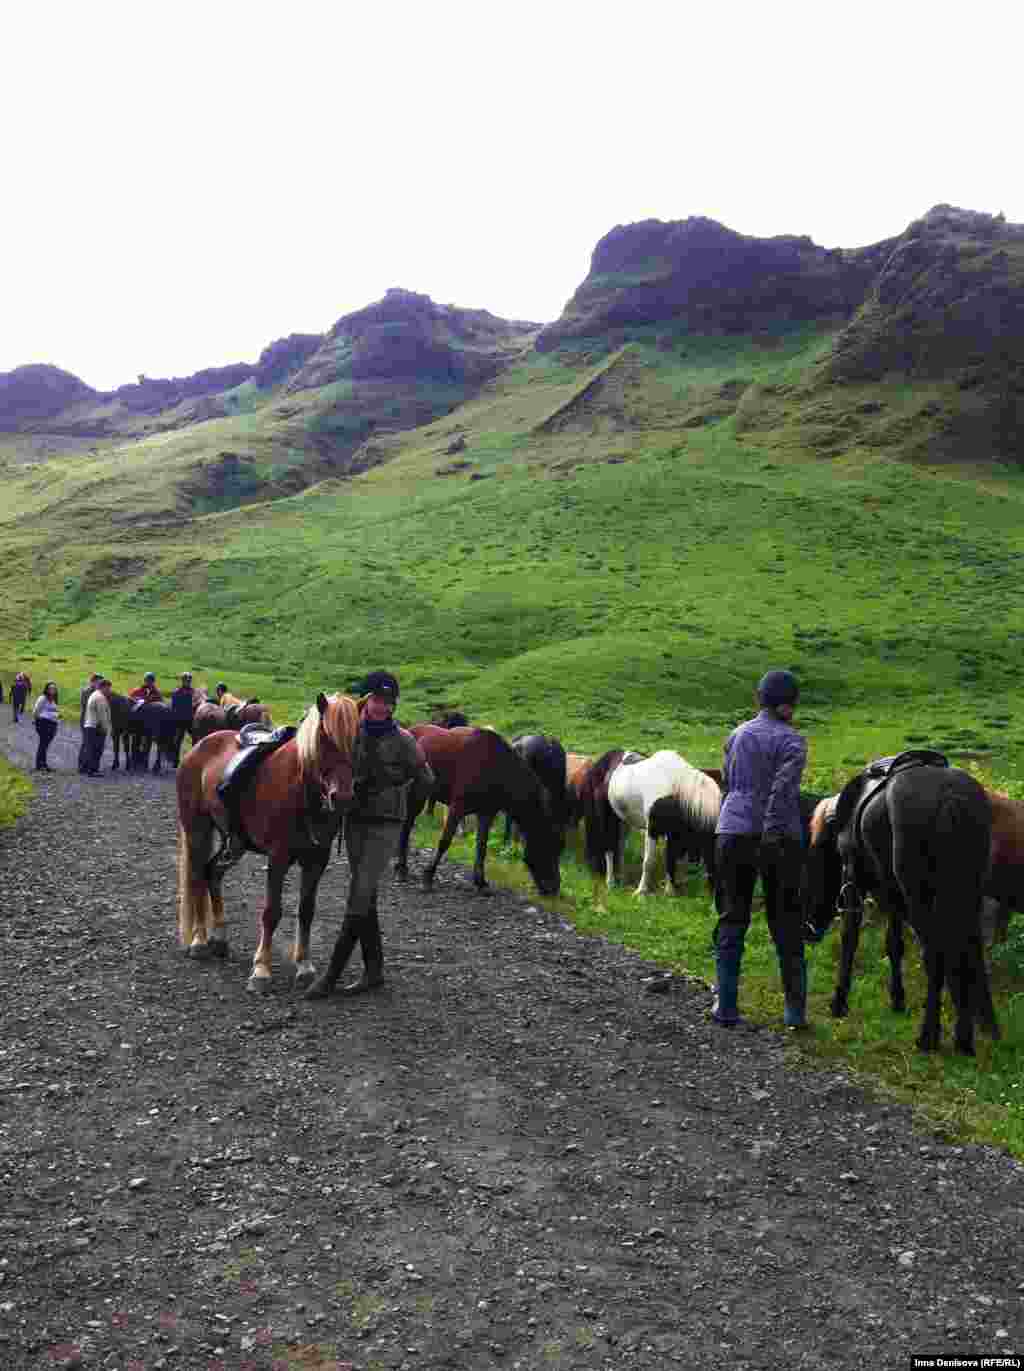 А это исландские лошади единственной породы, существующей в Исландии. Согласно закону, принятому Альтингом еще в дохристианские времена, на остров нельзя ввозить лошадей других пород, а если лошадь однажды вывезли - ей нельзя возвращаться. Исландские лошади низкорослы как пони, но гораздо грузнее.